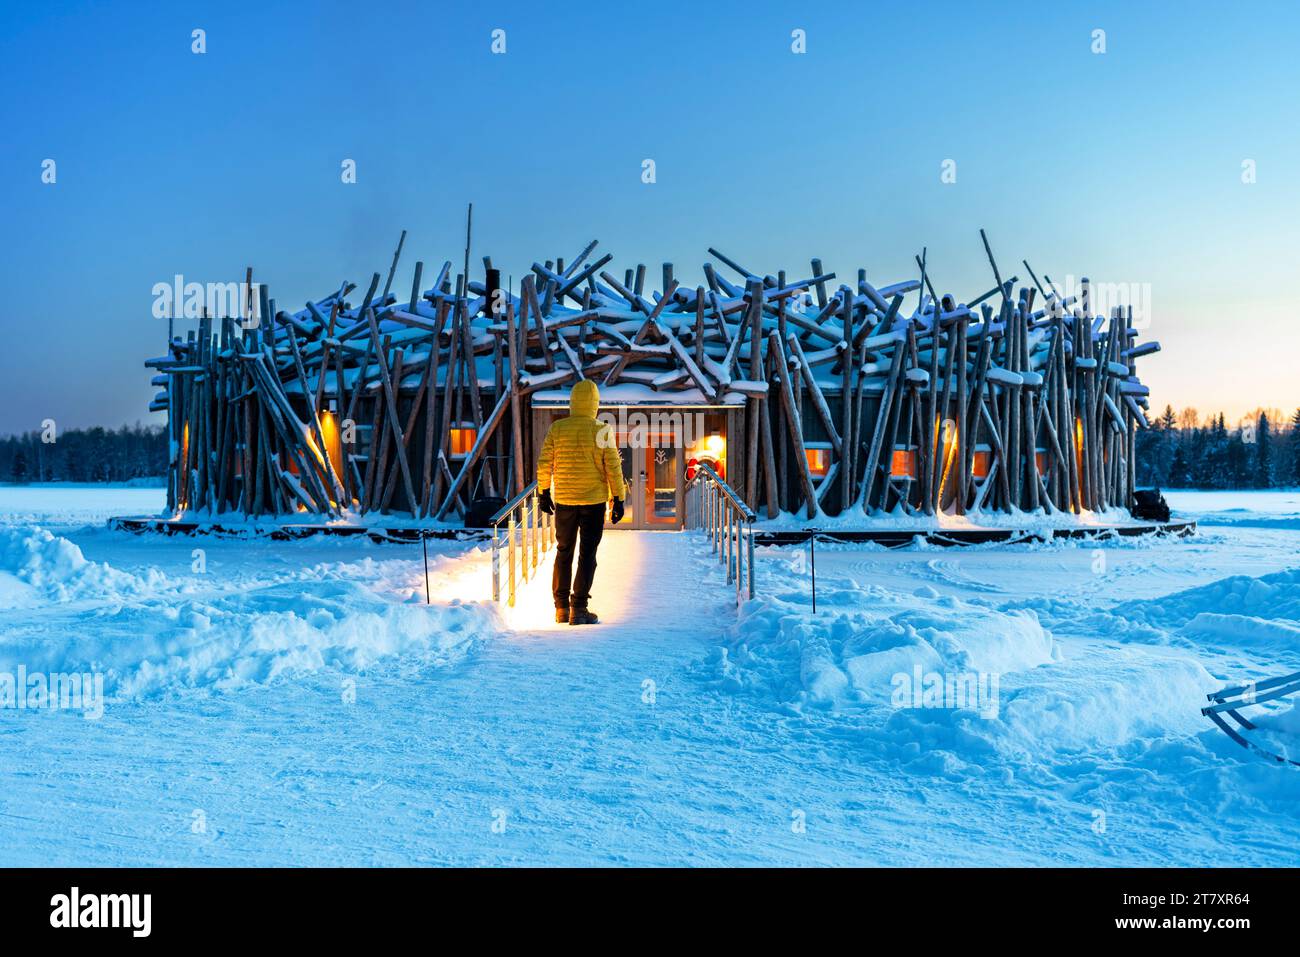 Personne se tient sur le pont reliant le bâtiment principal de l'hôtel illuminé Arctic Bath fait de rondins, heure du crépuscule, Harads, Laponie suédoise Banque D'Images